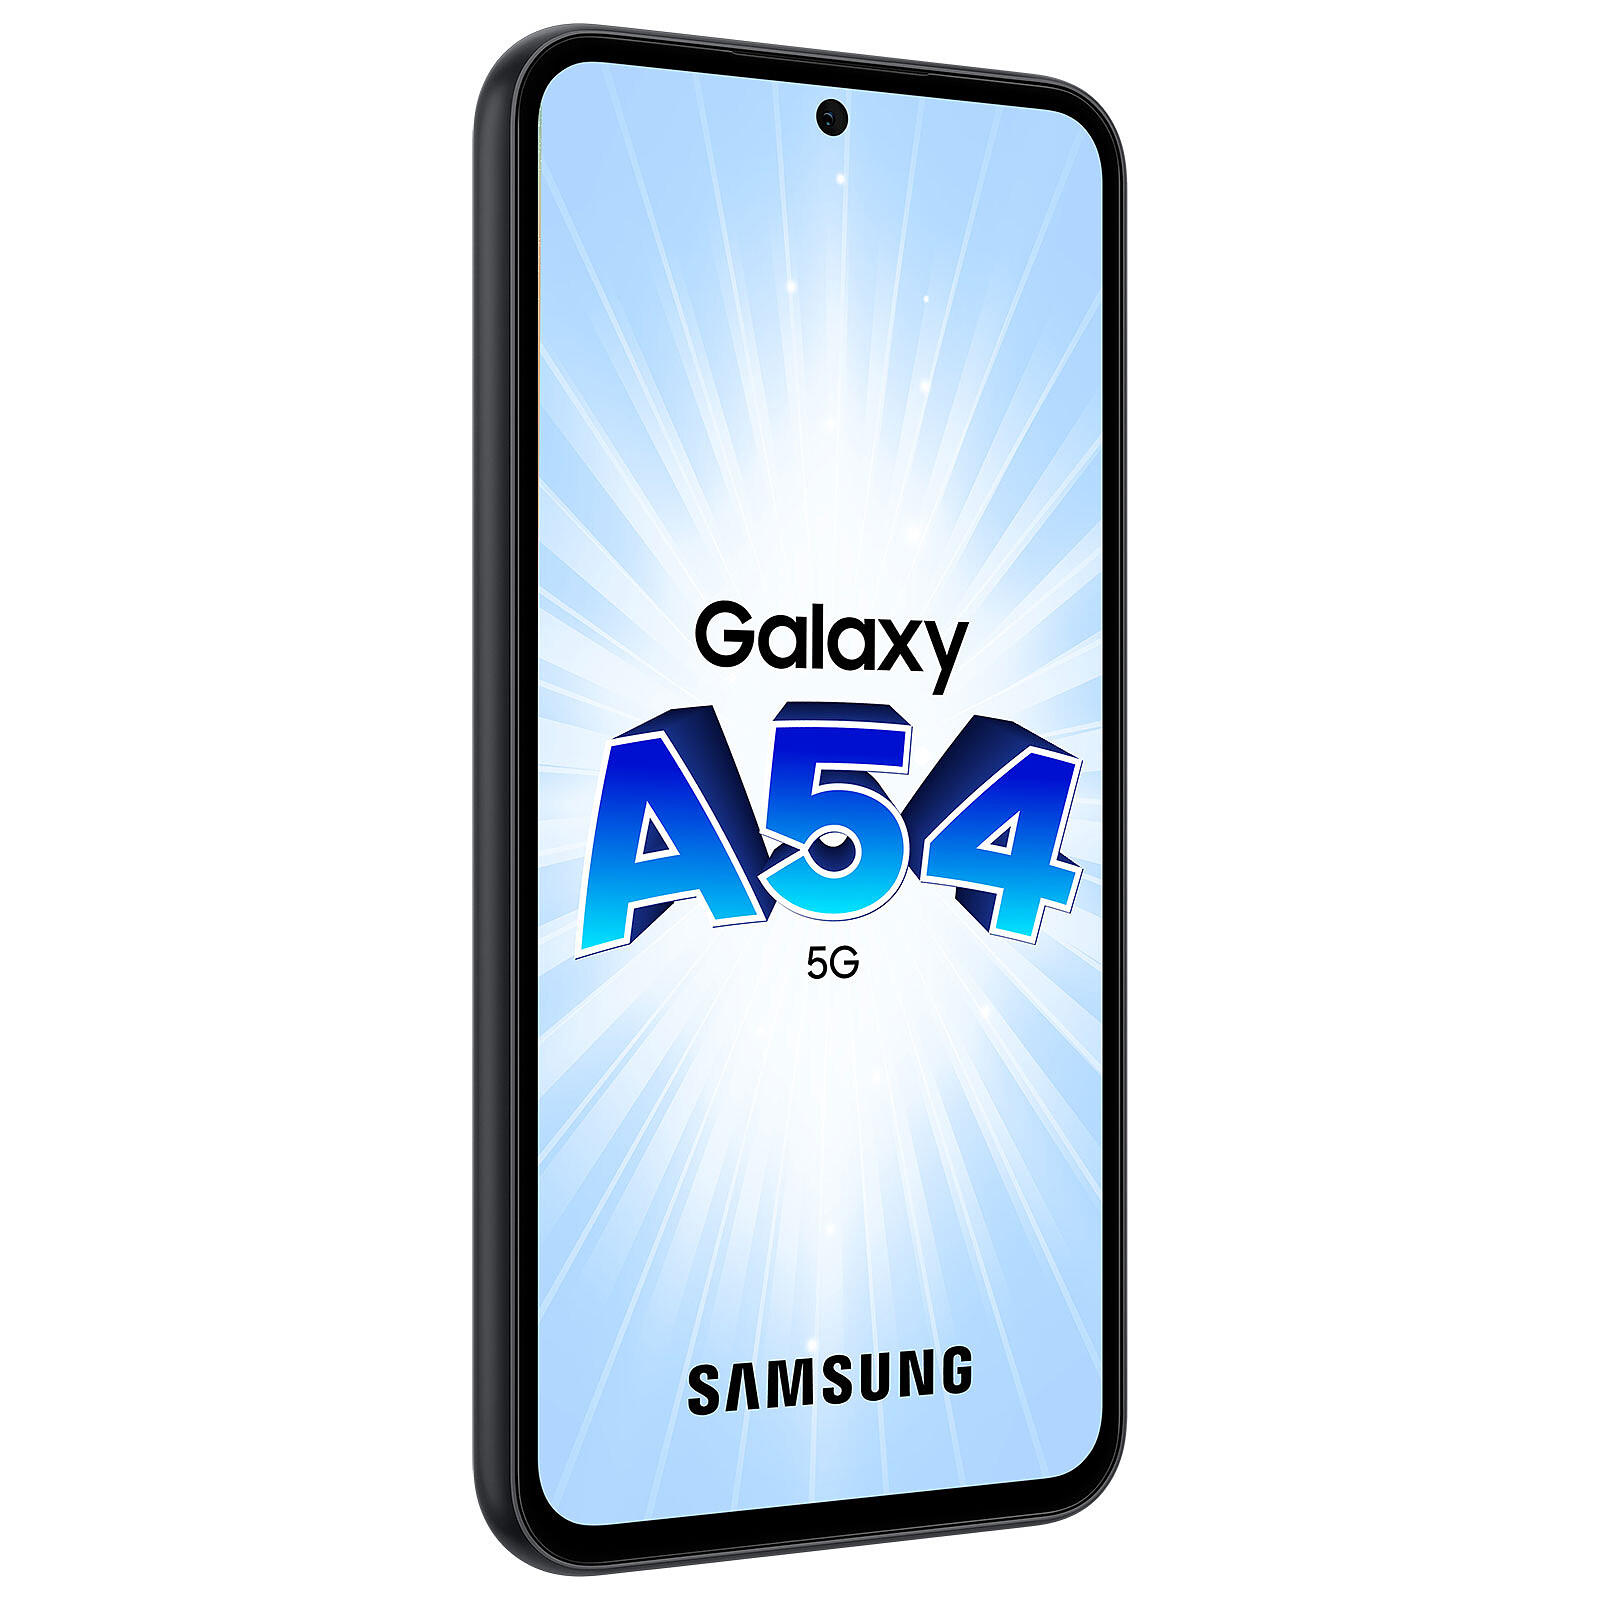 Samsung Galaxy A54 5G 5G 128 GB awesome white 8 GB RAM